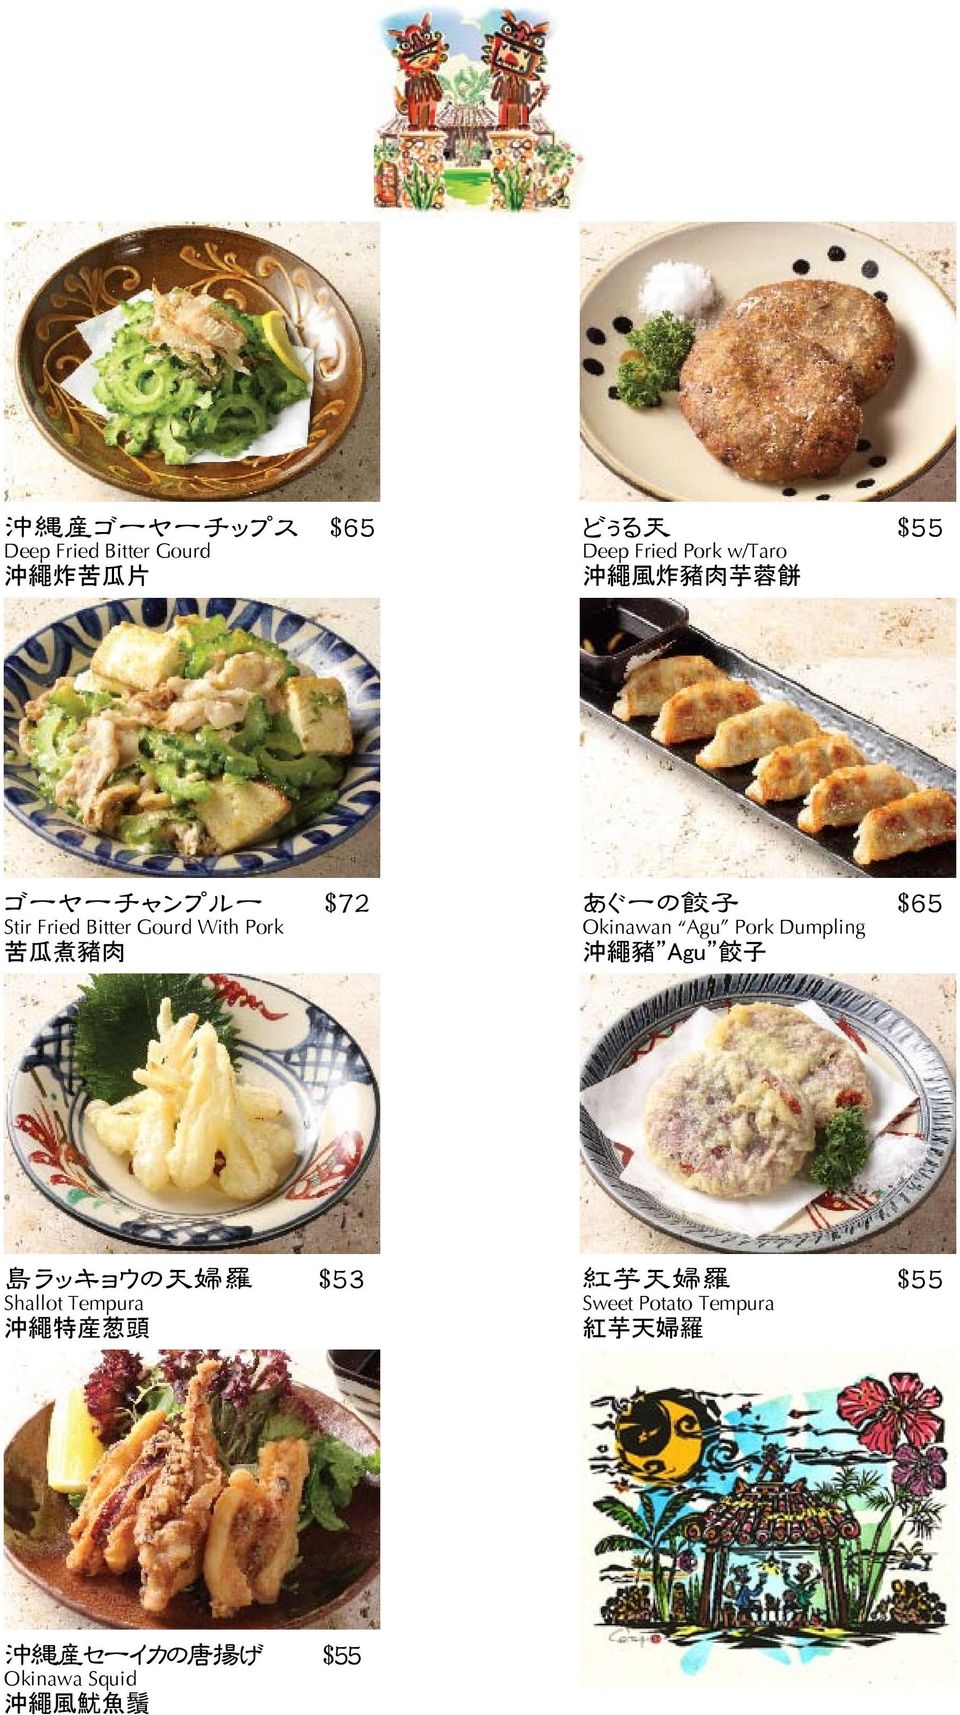 Okinawan Agu Pork Dumpling 沖 繩 豬 Agu 餃 子 島 ラッキョウの 天 婦 羅 $53 Shallot Tempura 沖 繩 特 産 葱 頭 紅